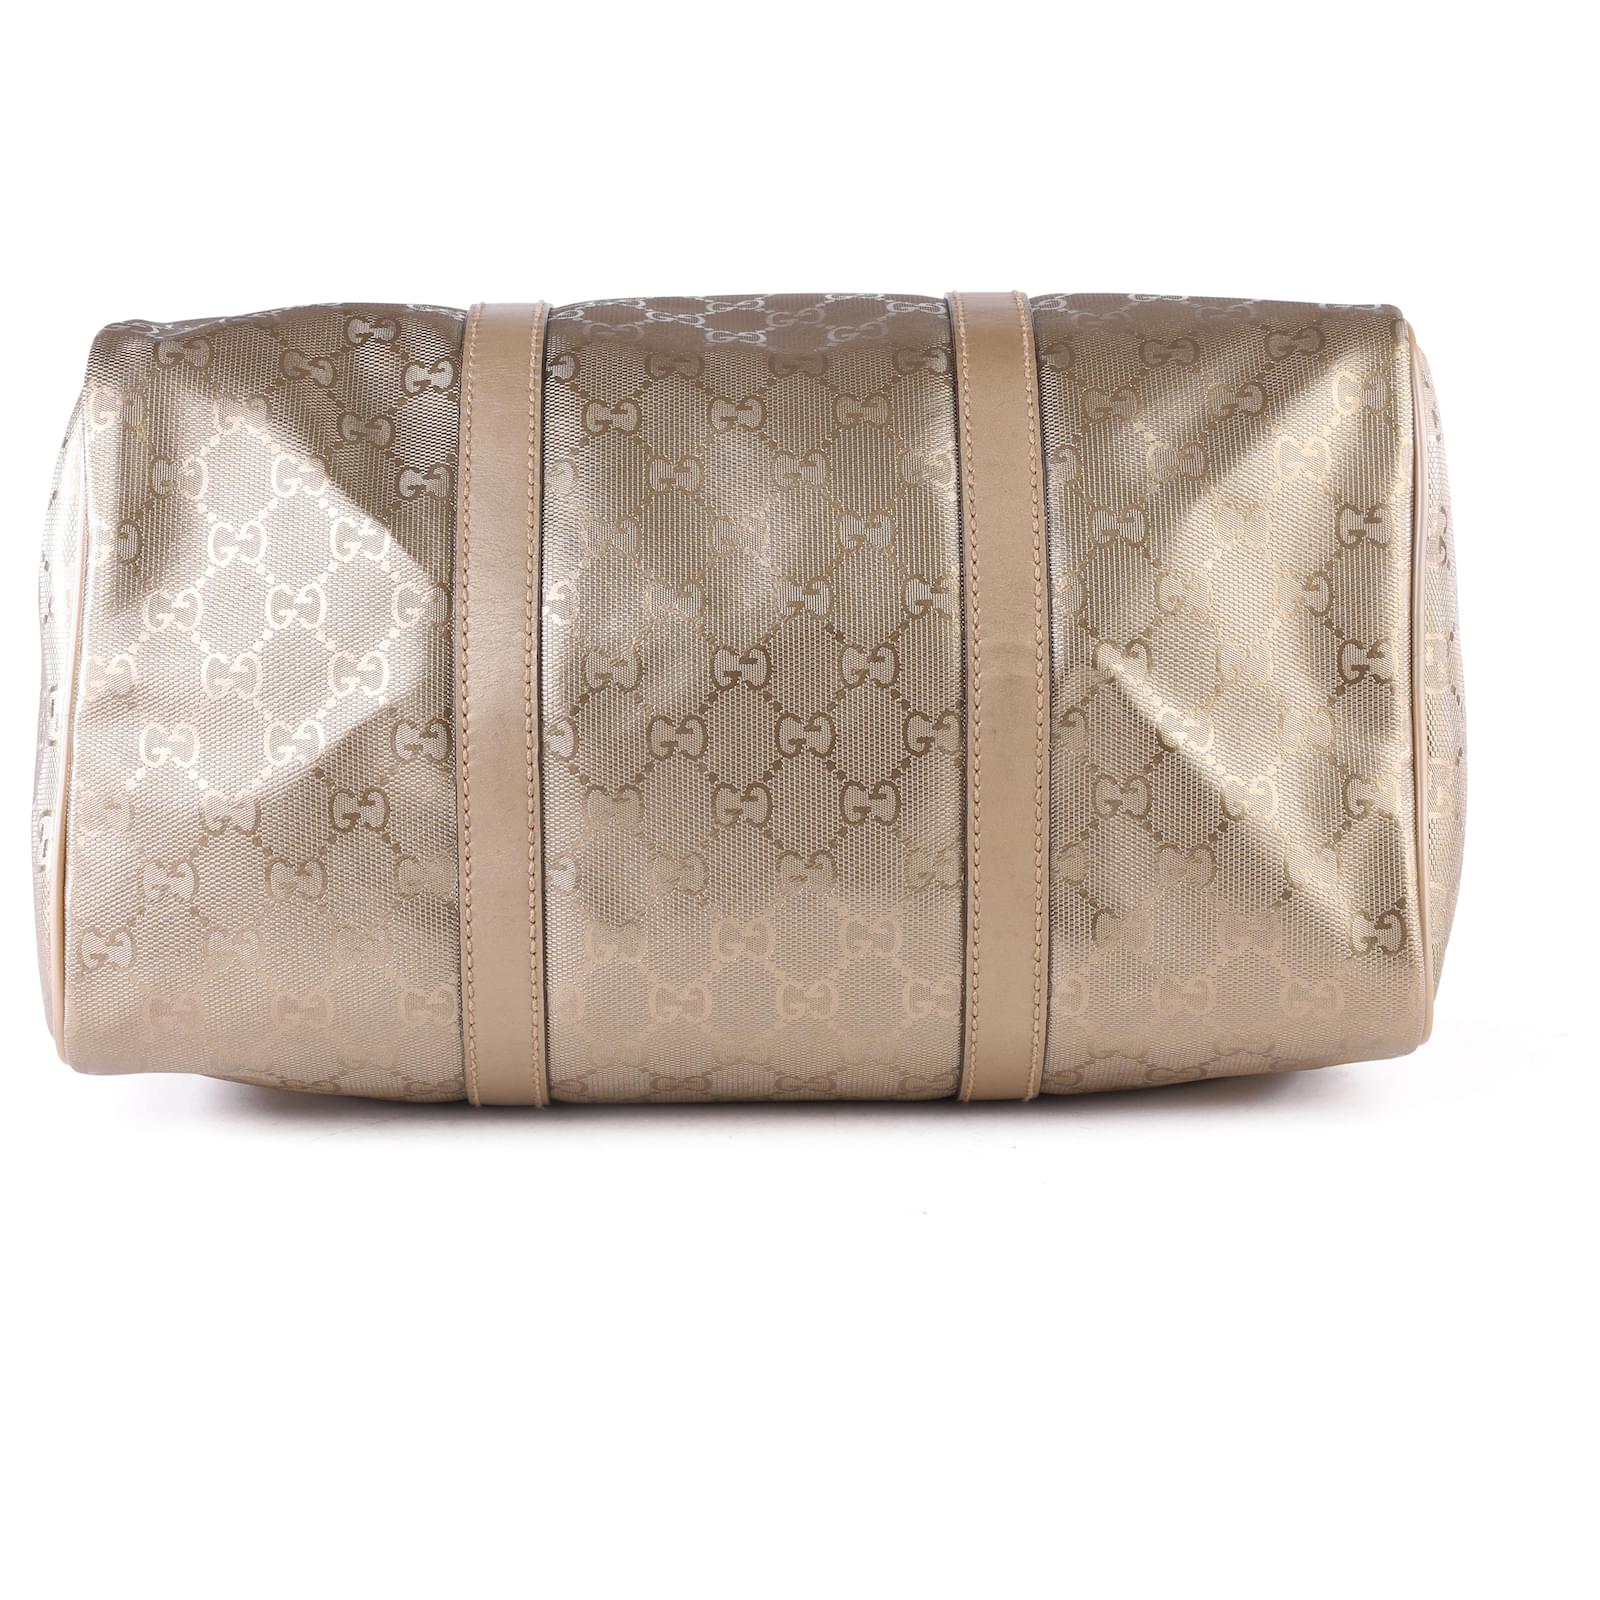 Gucci Speedy Handbag 242366